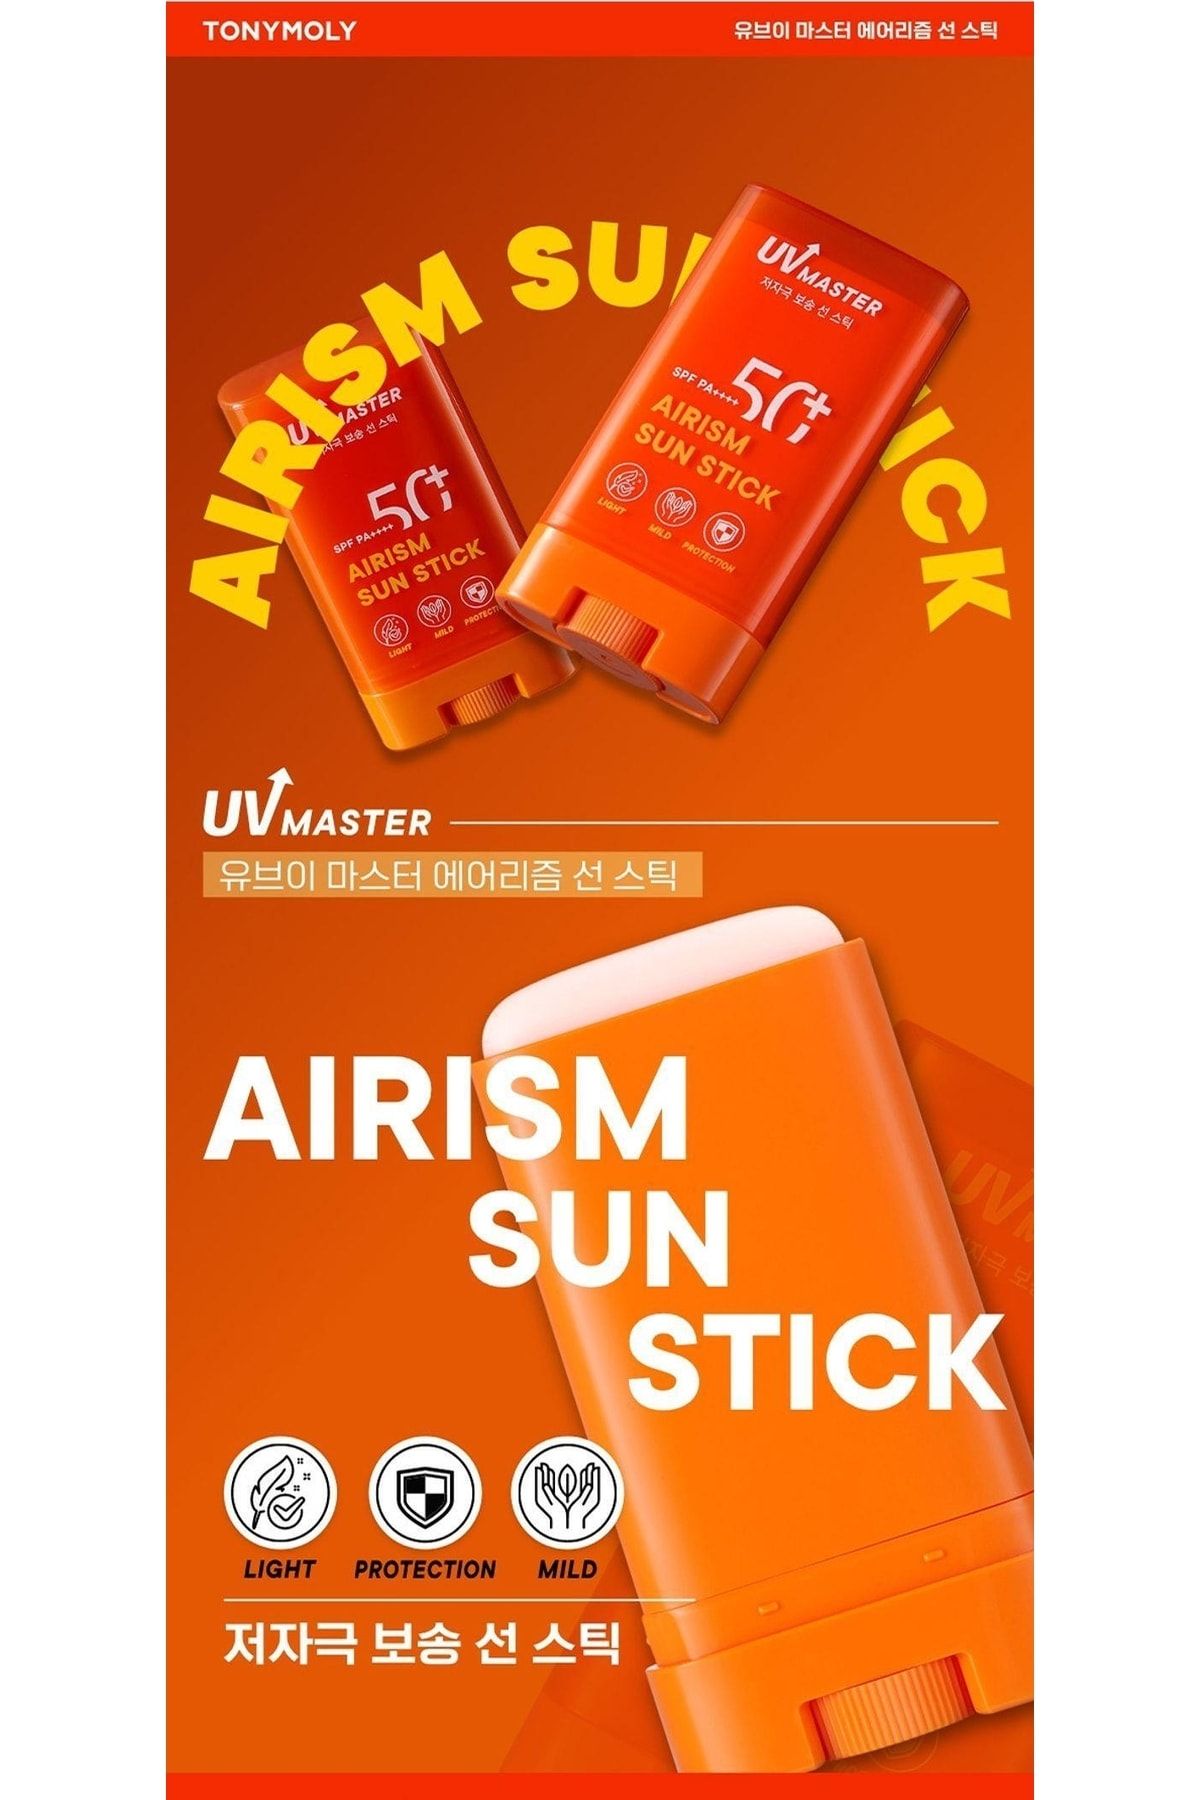 Buy TONYMOLY - UV Master Airism Sun Stick in Bulk